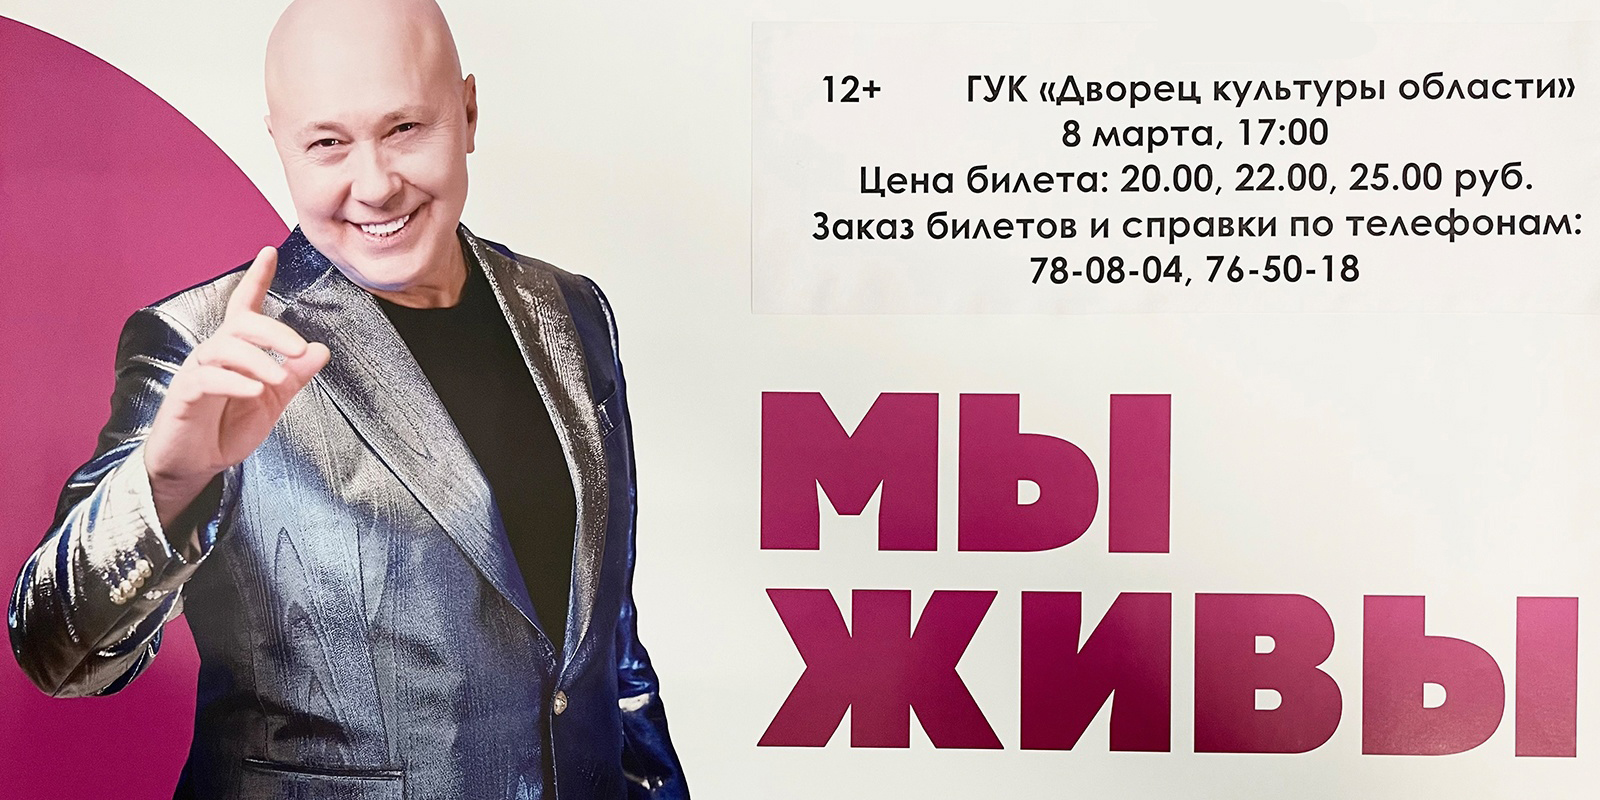 Подарок к празднику: концерт Александра Солодухи пройдет в Могилеве 8 марта